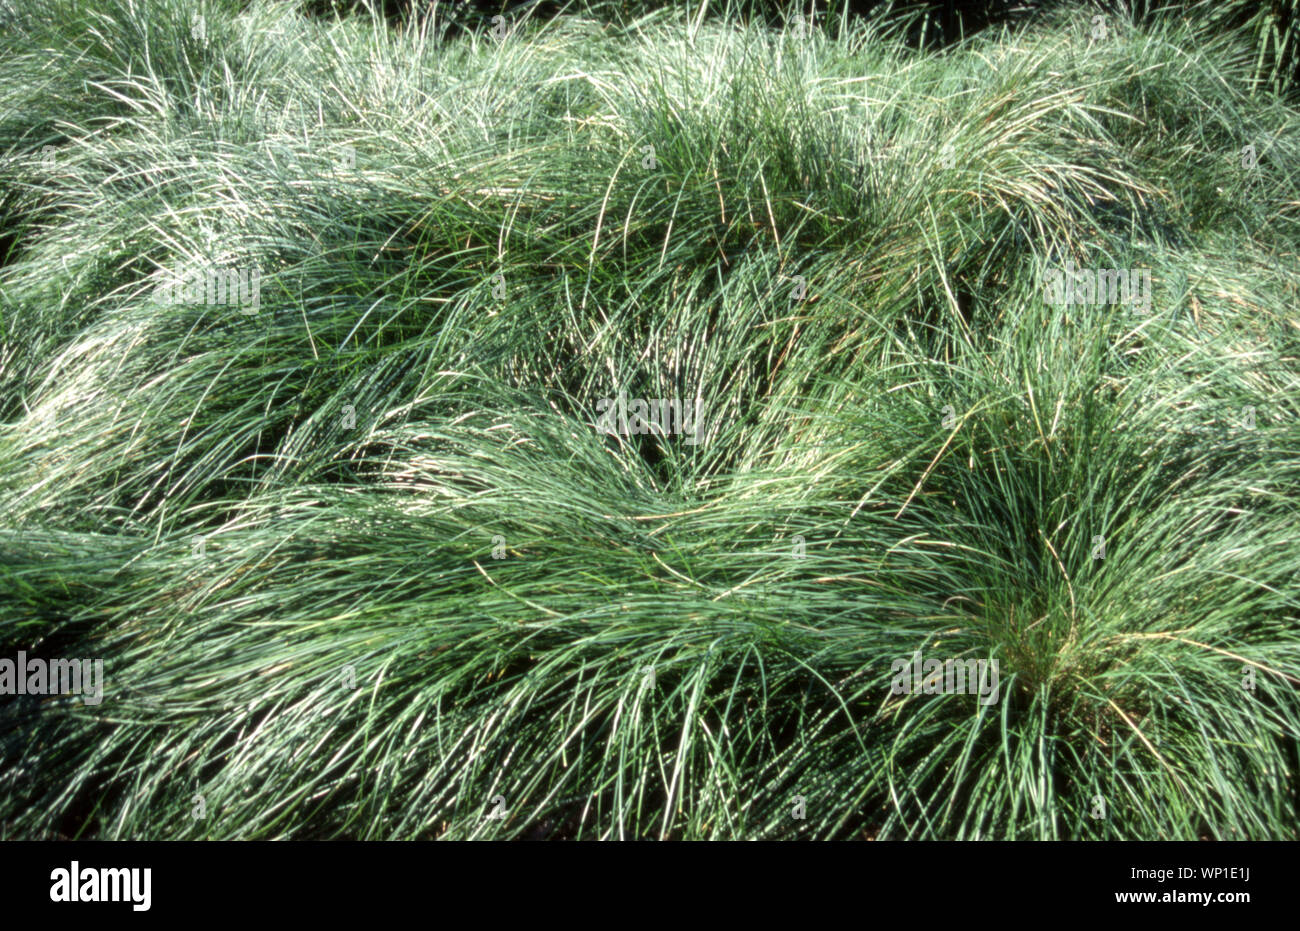 Poa labillardierei (Common Tussock-grass) Stock Photo